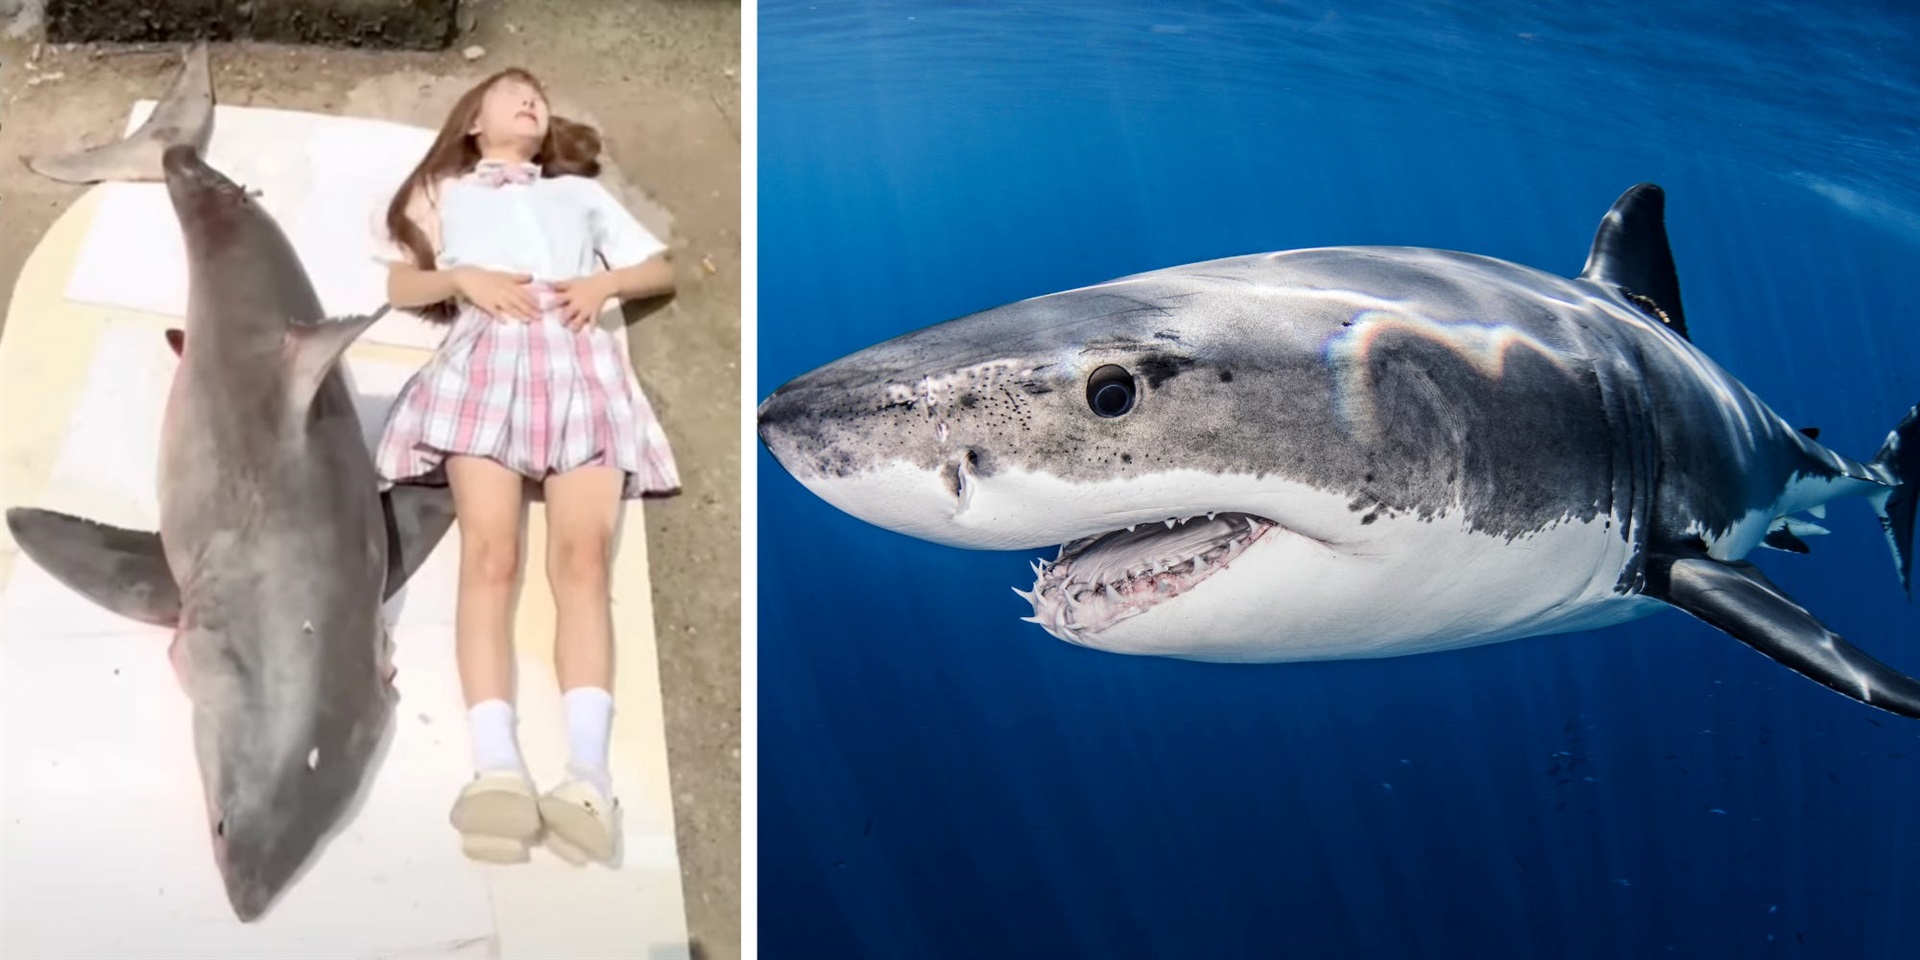 Čínsky influencer bol vypočúvaný po tom, čo ho nasledovníci vo videu obvinili, že zjedol veľkého bieleho žraloka